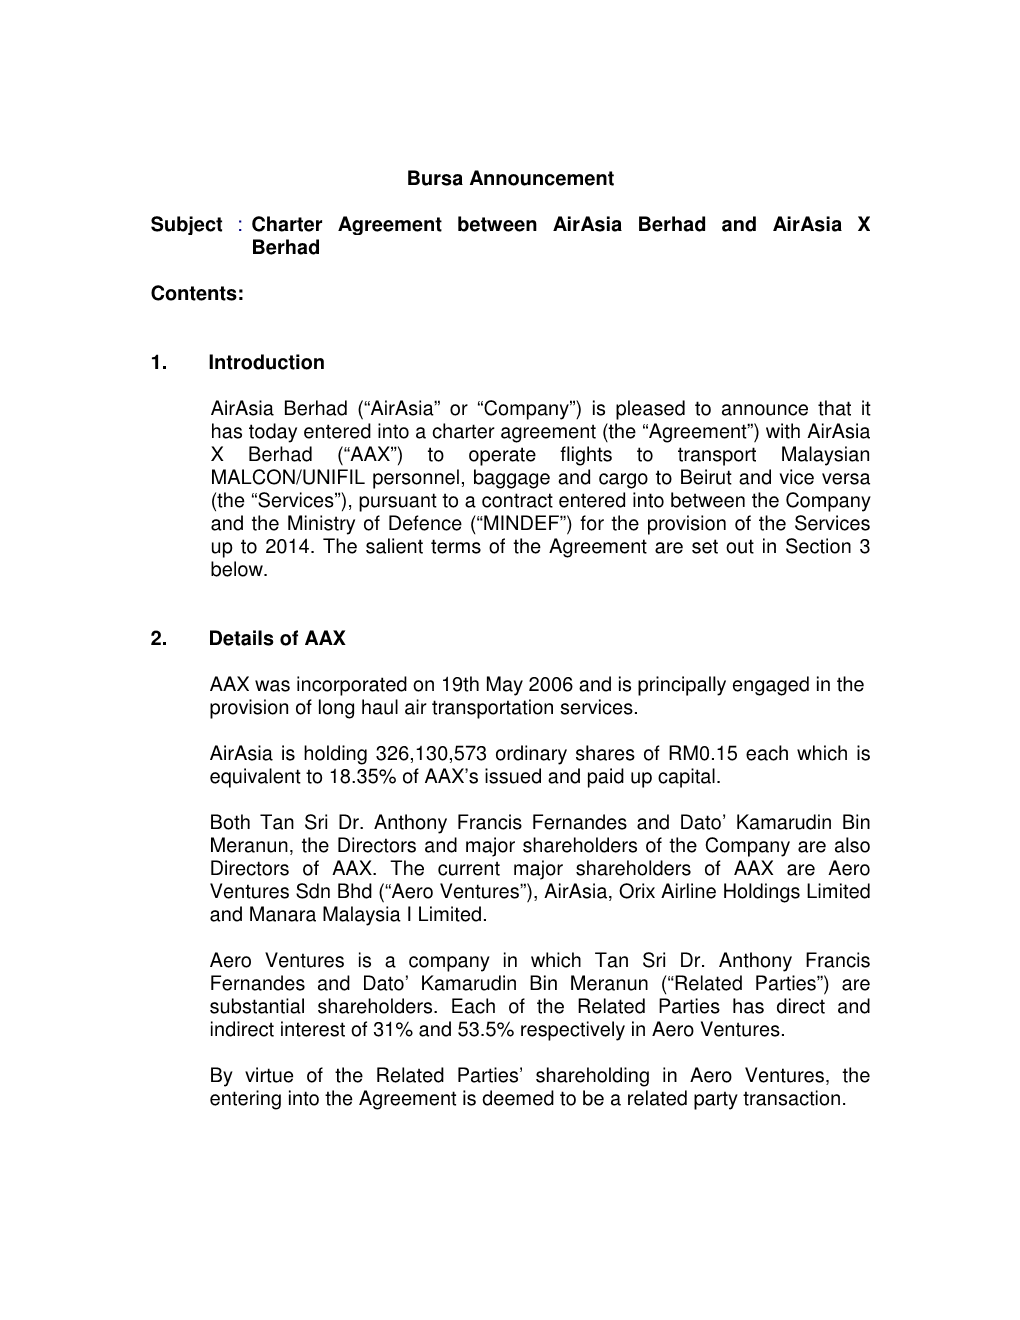 Bursa Announcement Subject : Charter Agreement Between